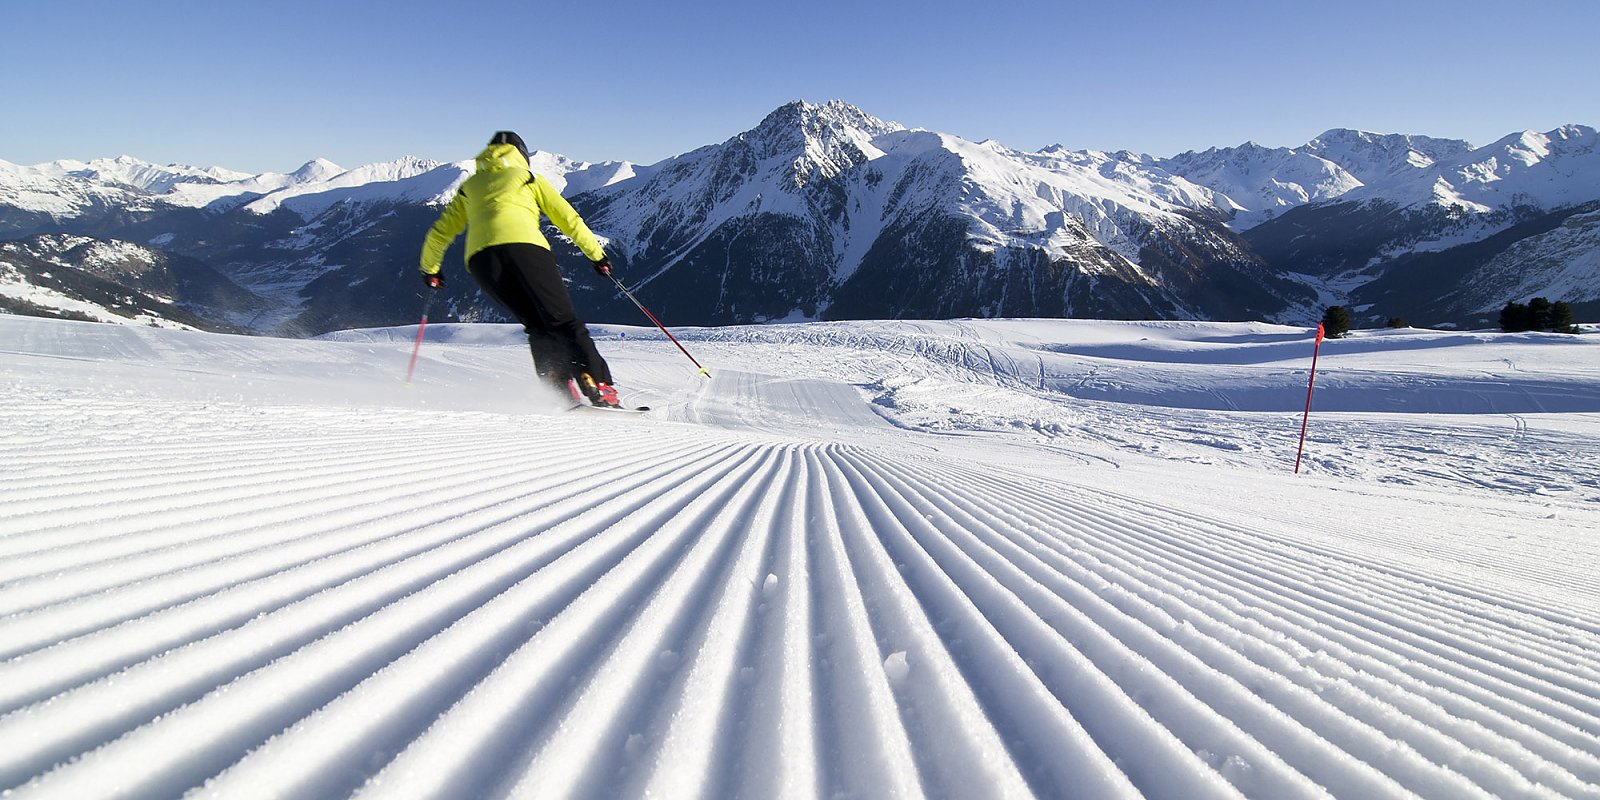 Ski Alpin